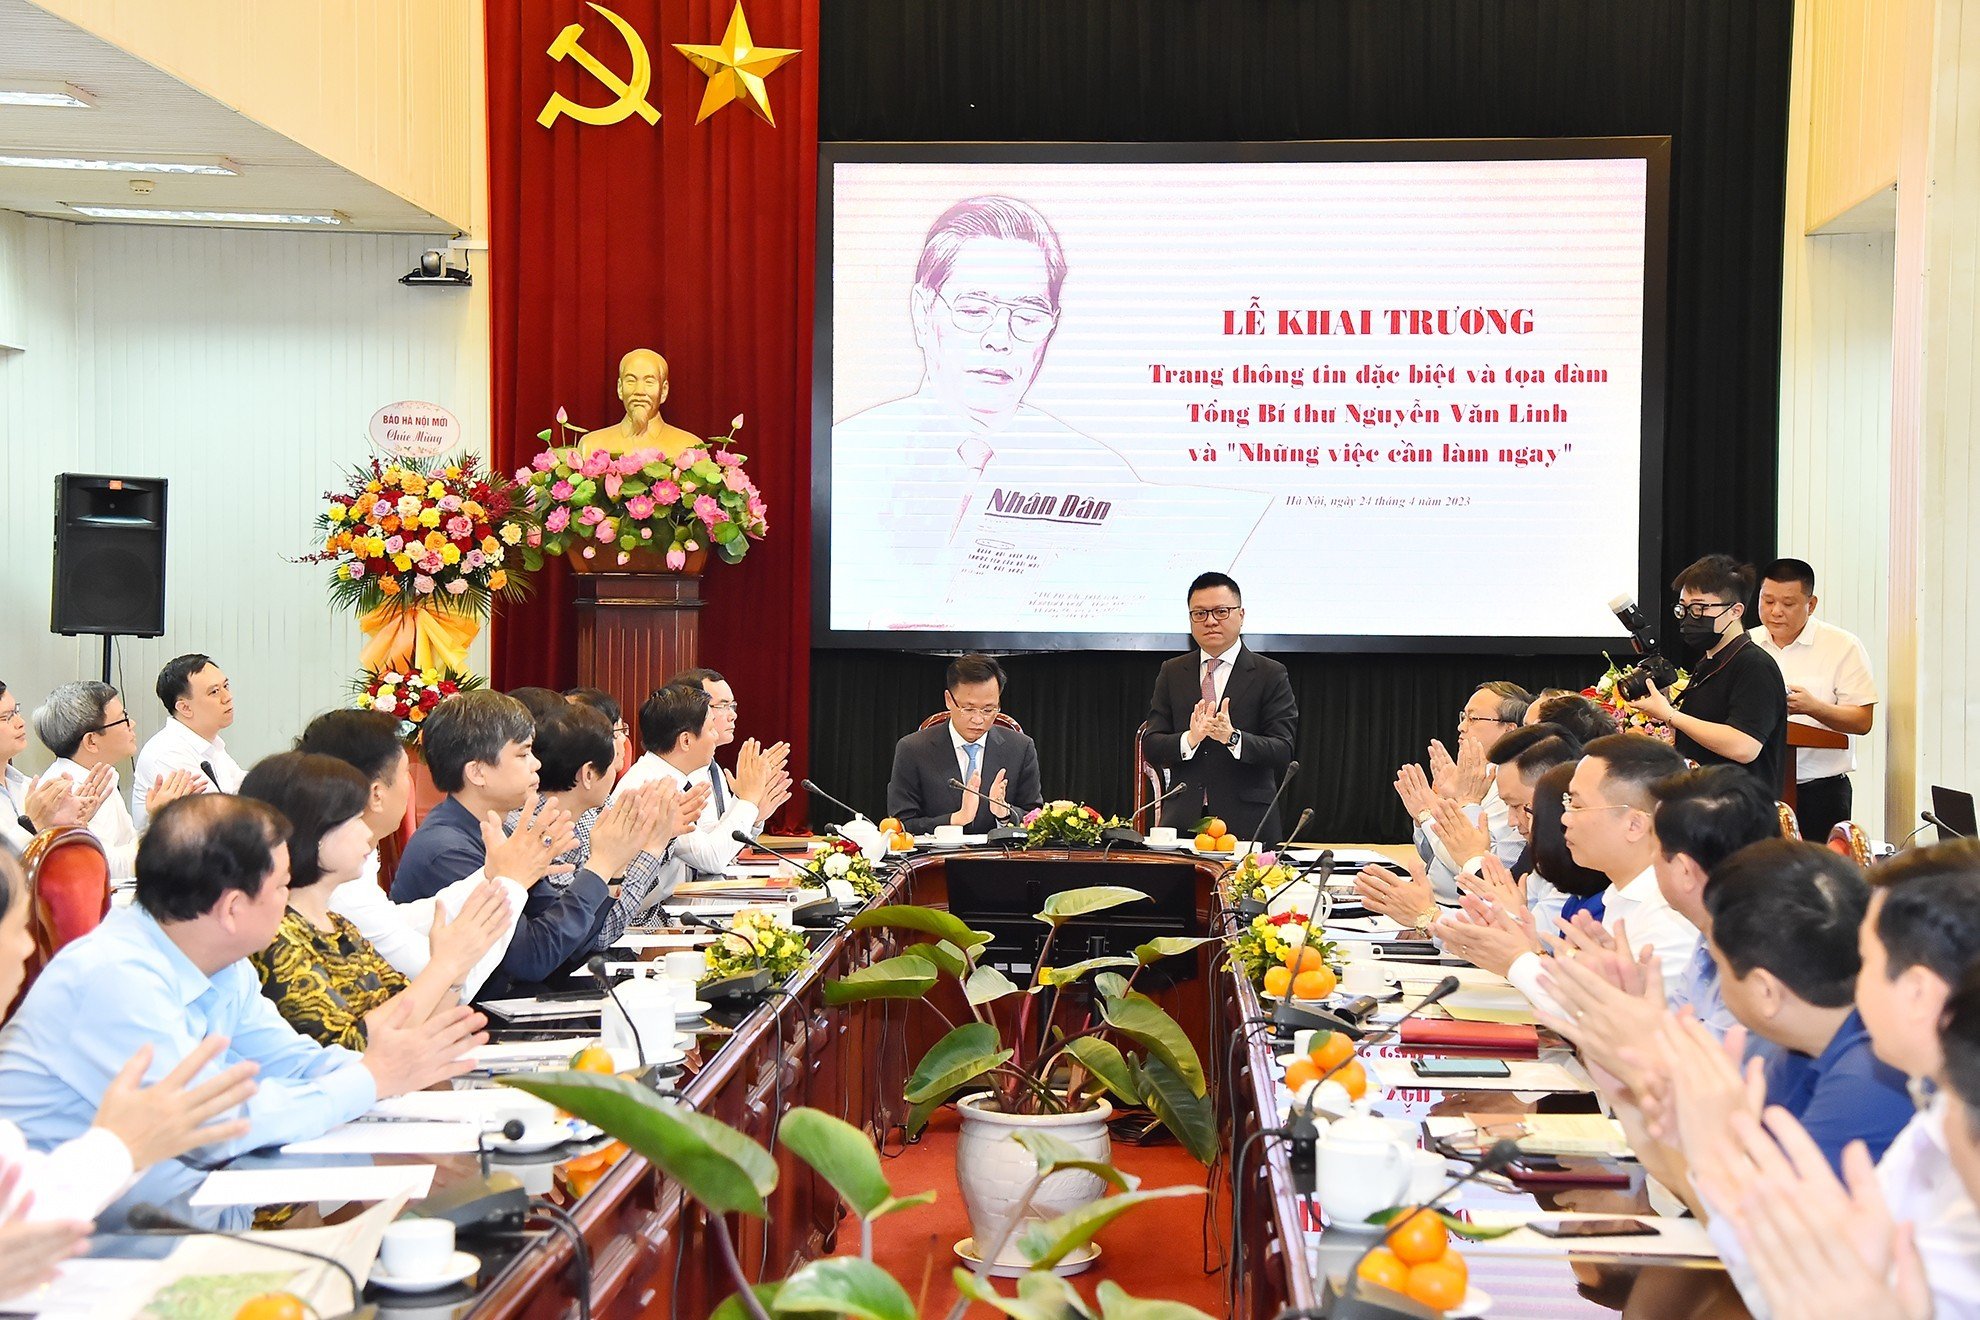 Báo Nhân Dân khai trương trang thông tin đặc biệt về Tổng Bí thư Nguyễn Văn Linh - Ảnh 1.